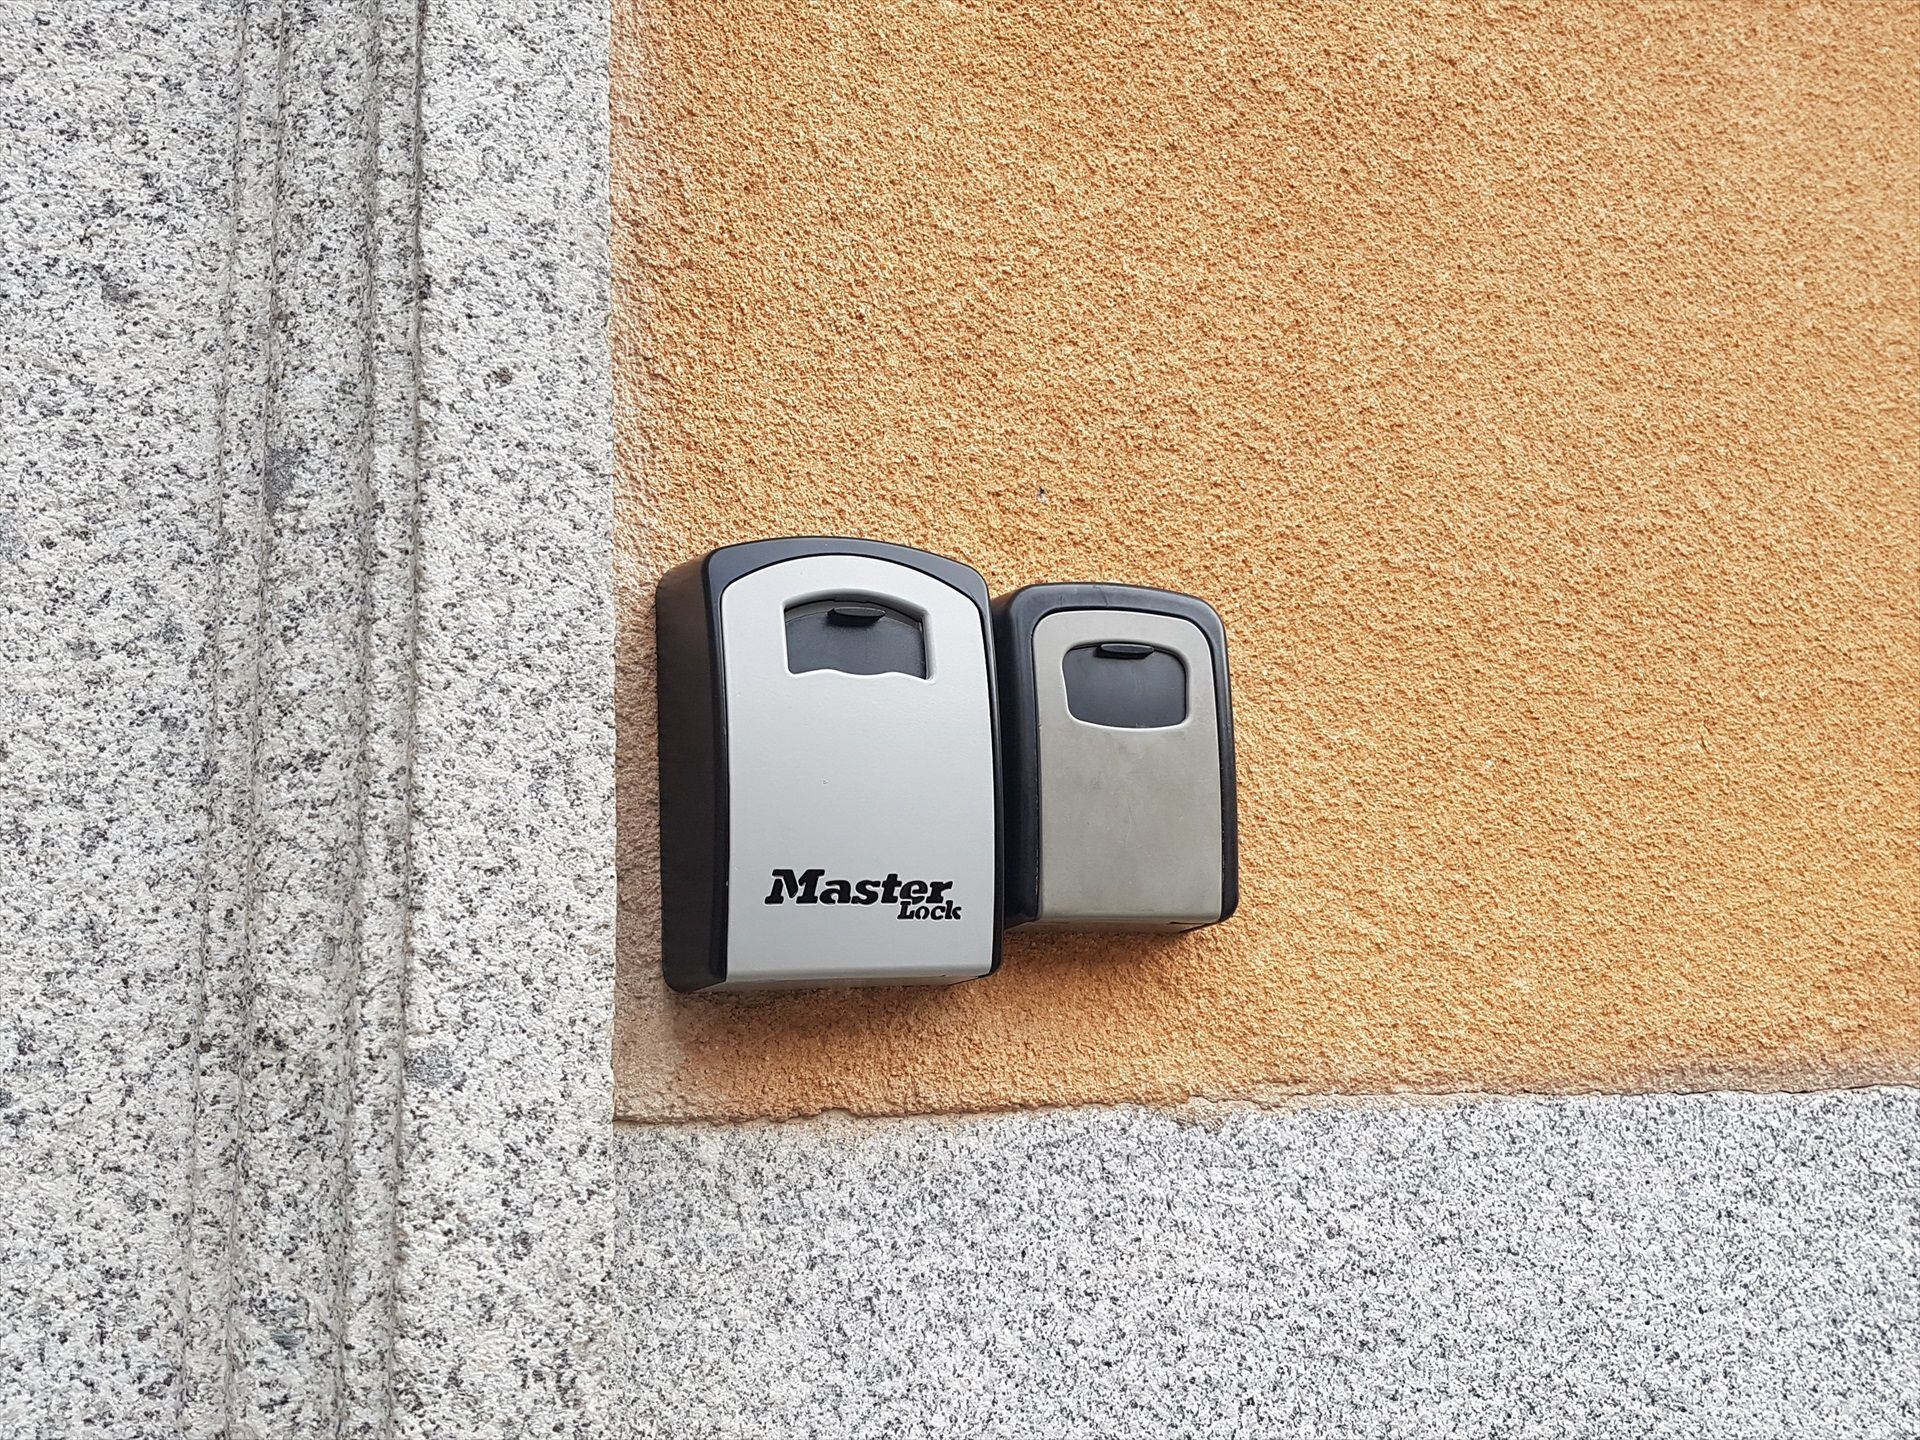 Cajetines de acceso a viviendas de uso turístico en un edificio de Madrid